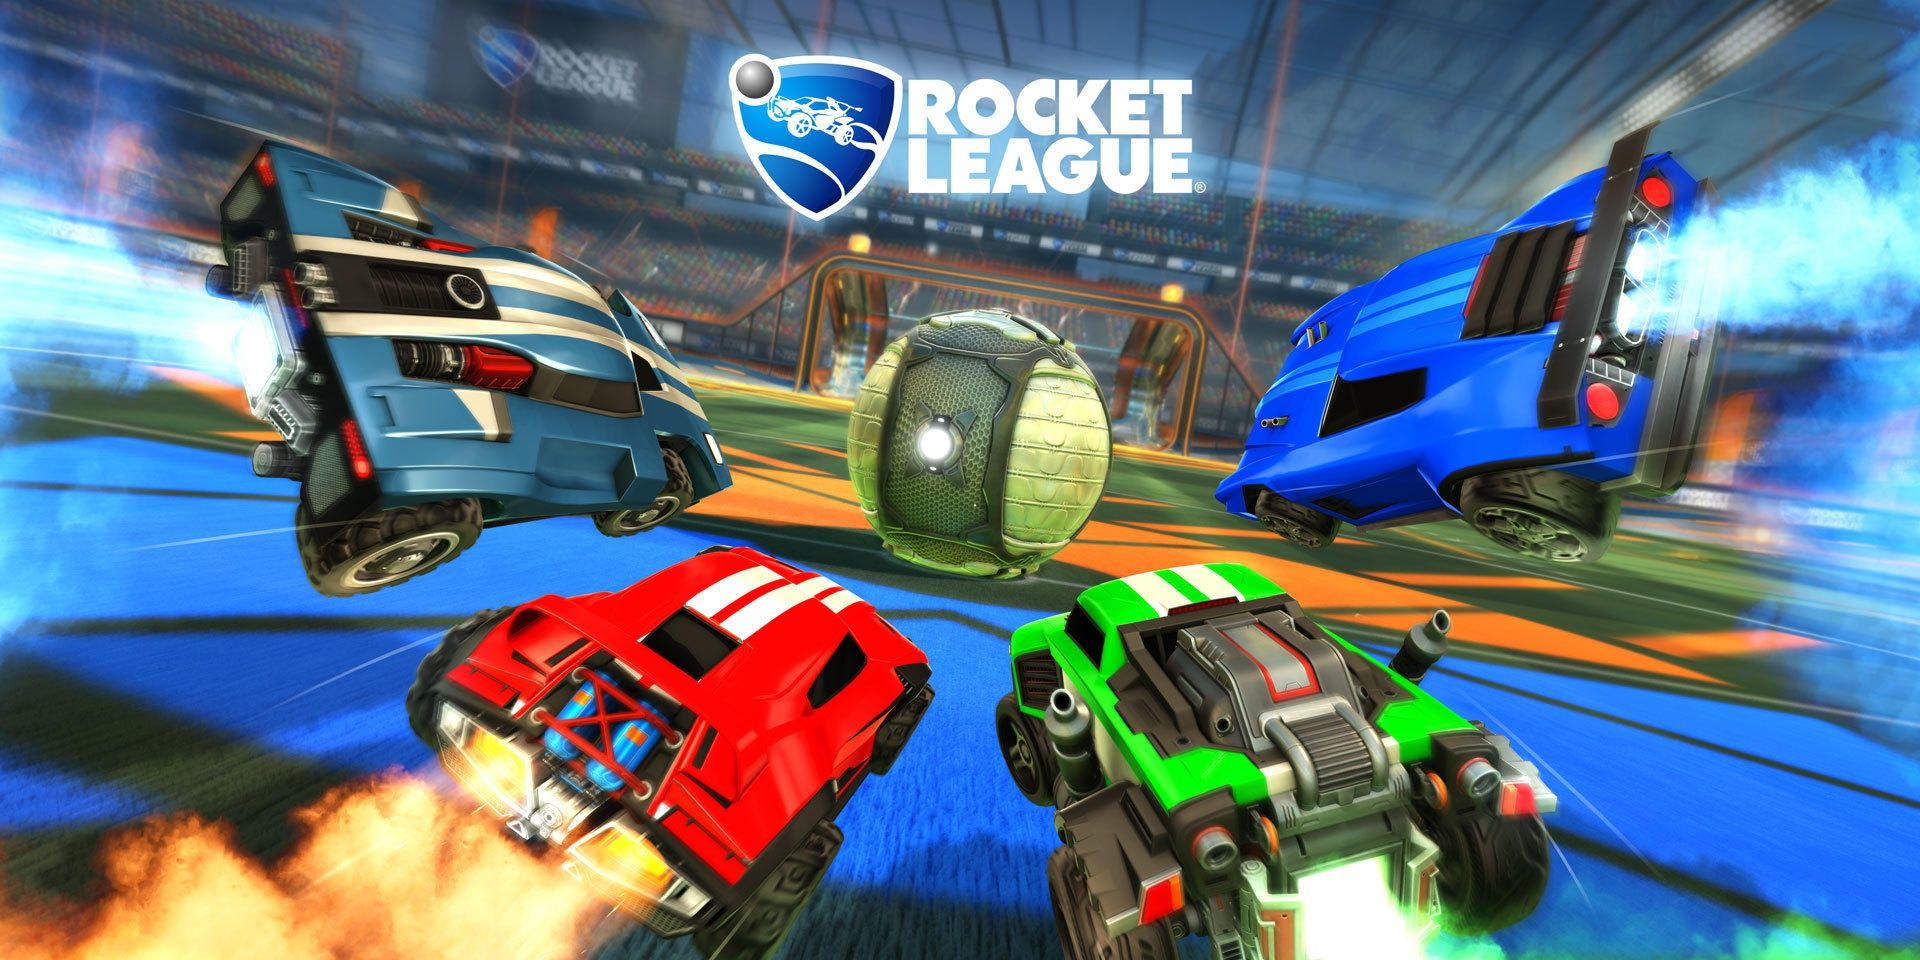 rocket league game showing game logo